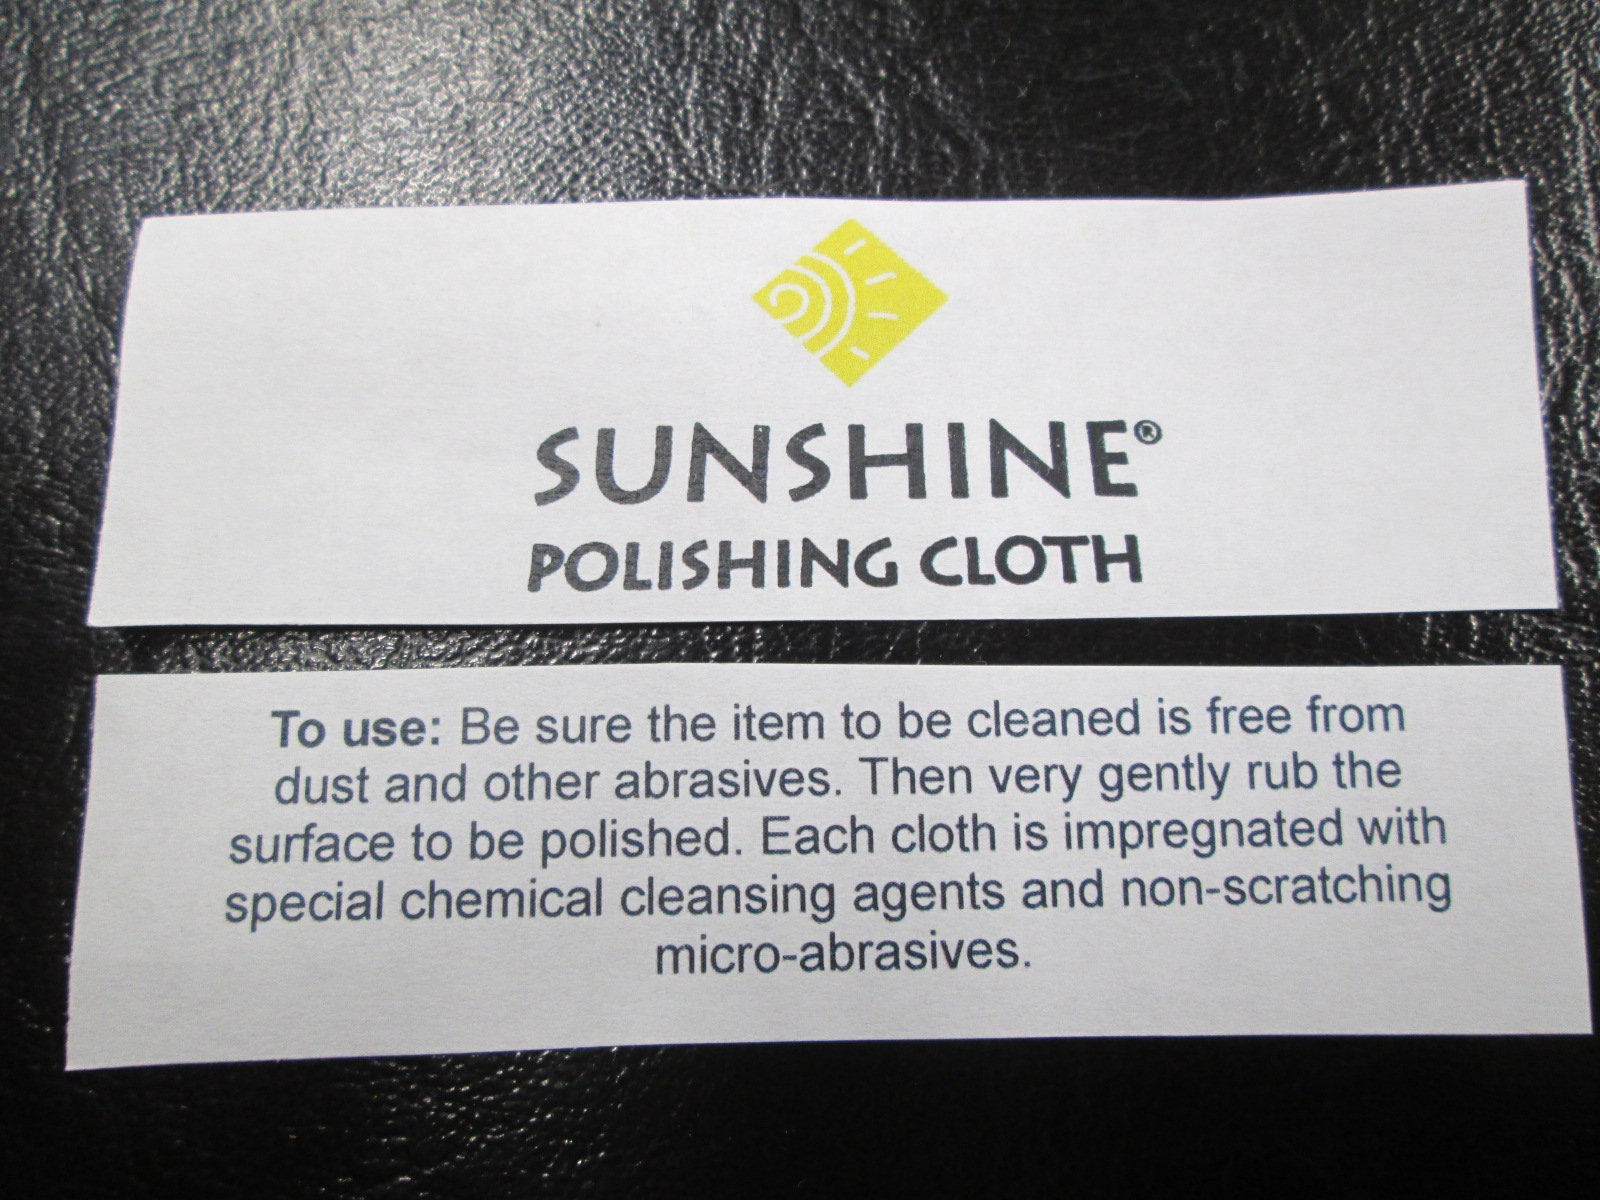 Large Sunshine polishing cloth for jewelry